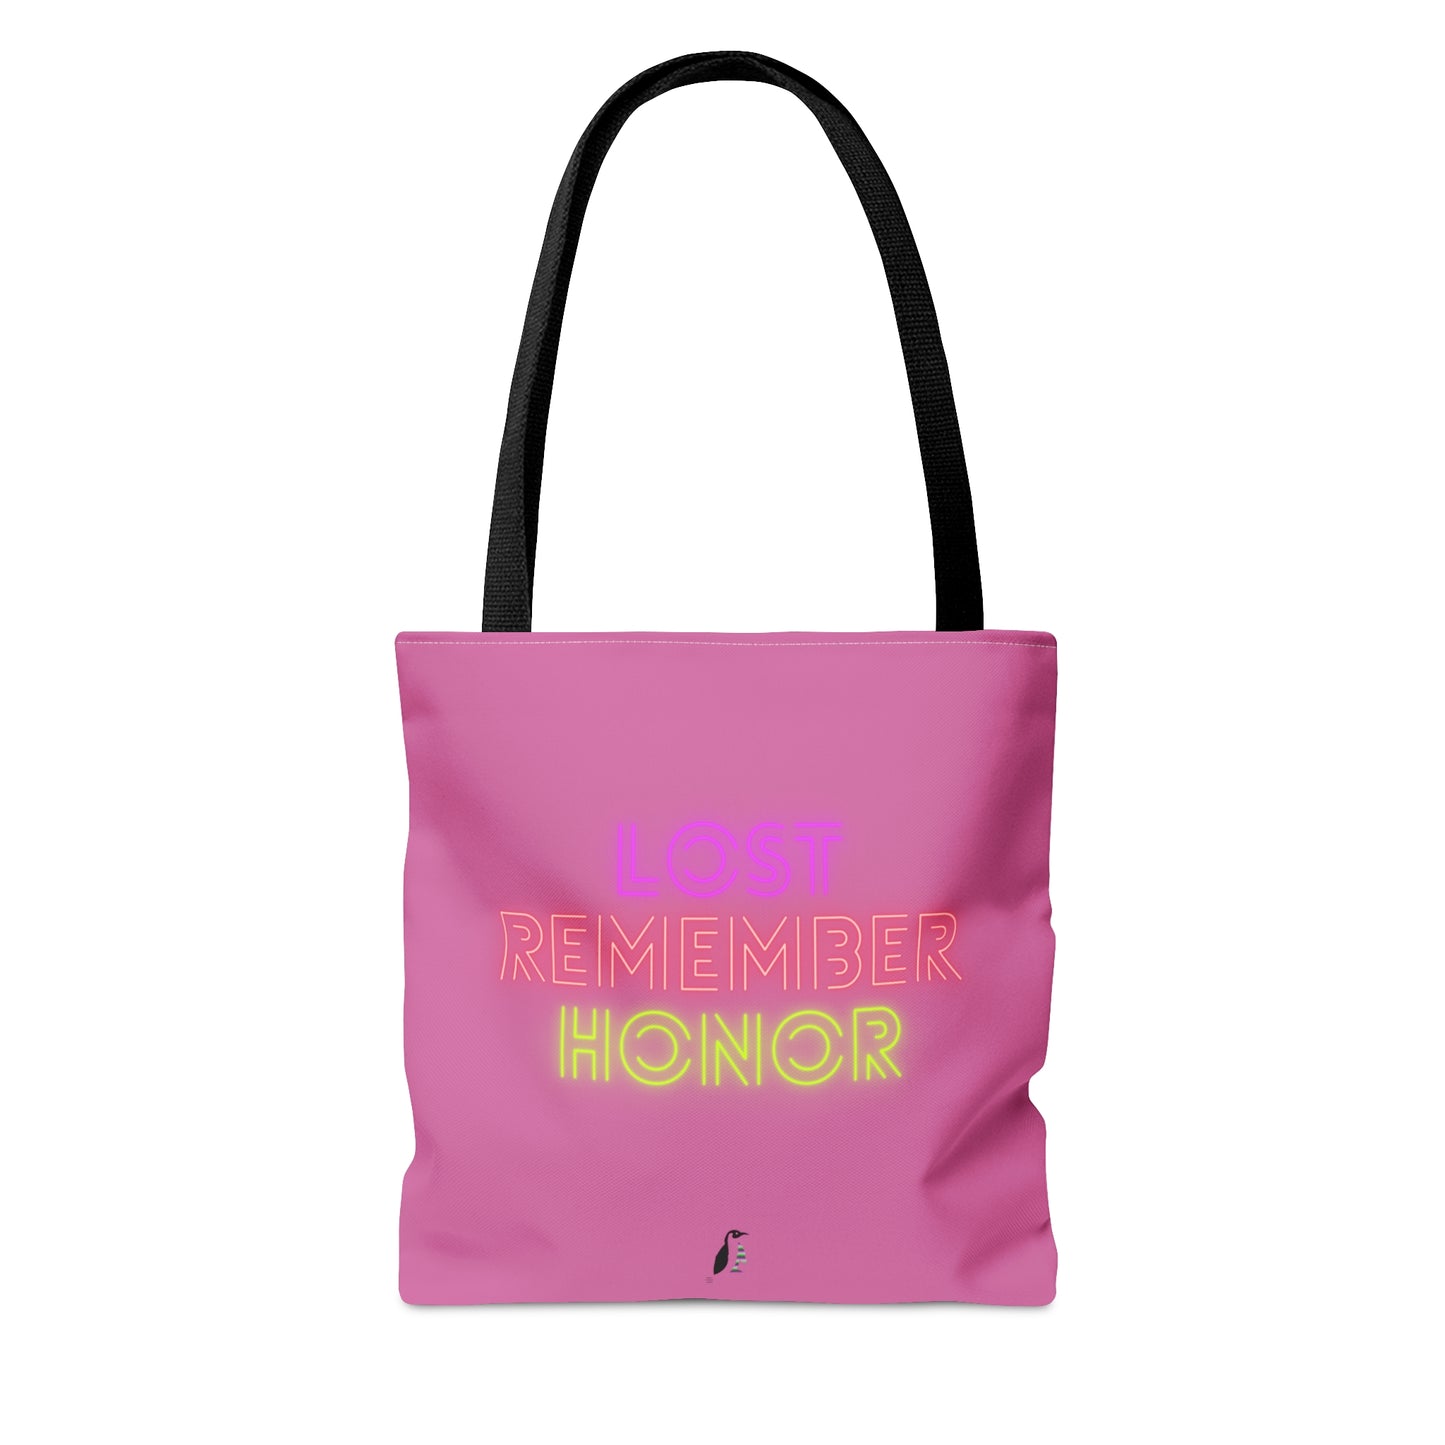 Tote Bag: Fishing Lite Pink